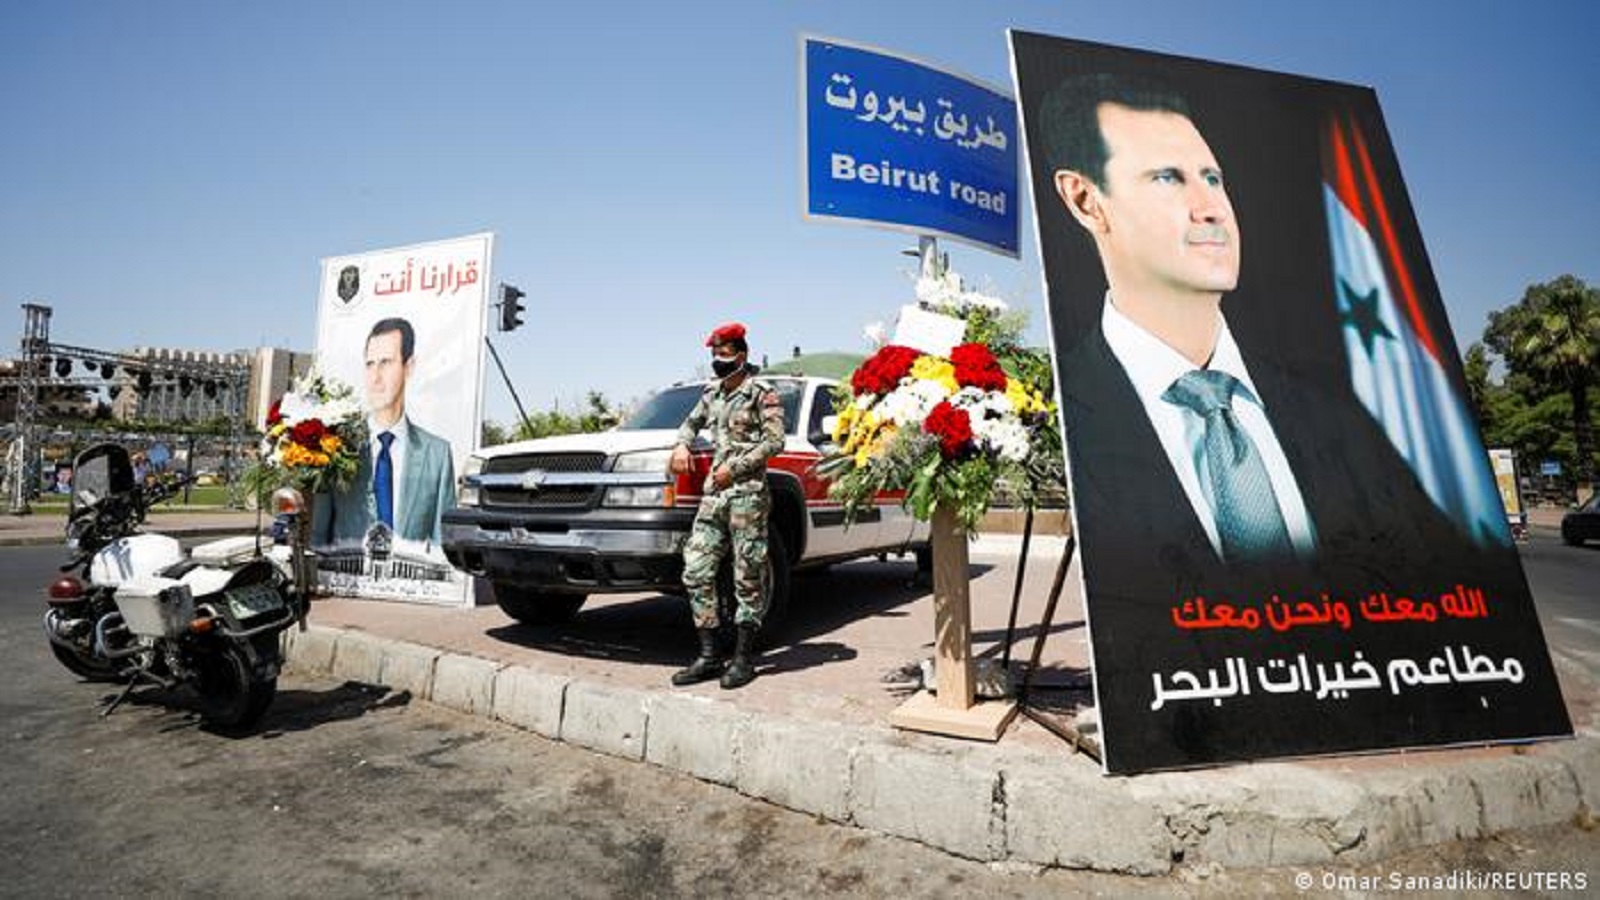 سوريا بعد إنتخابات الأسد: أسئلة إعادة الإعمار